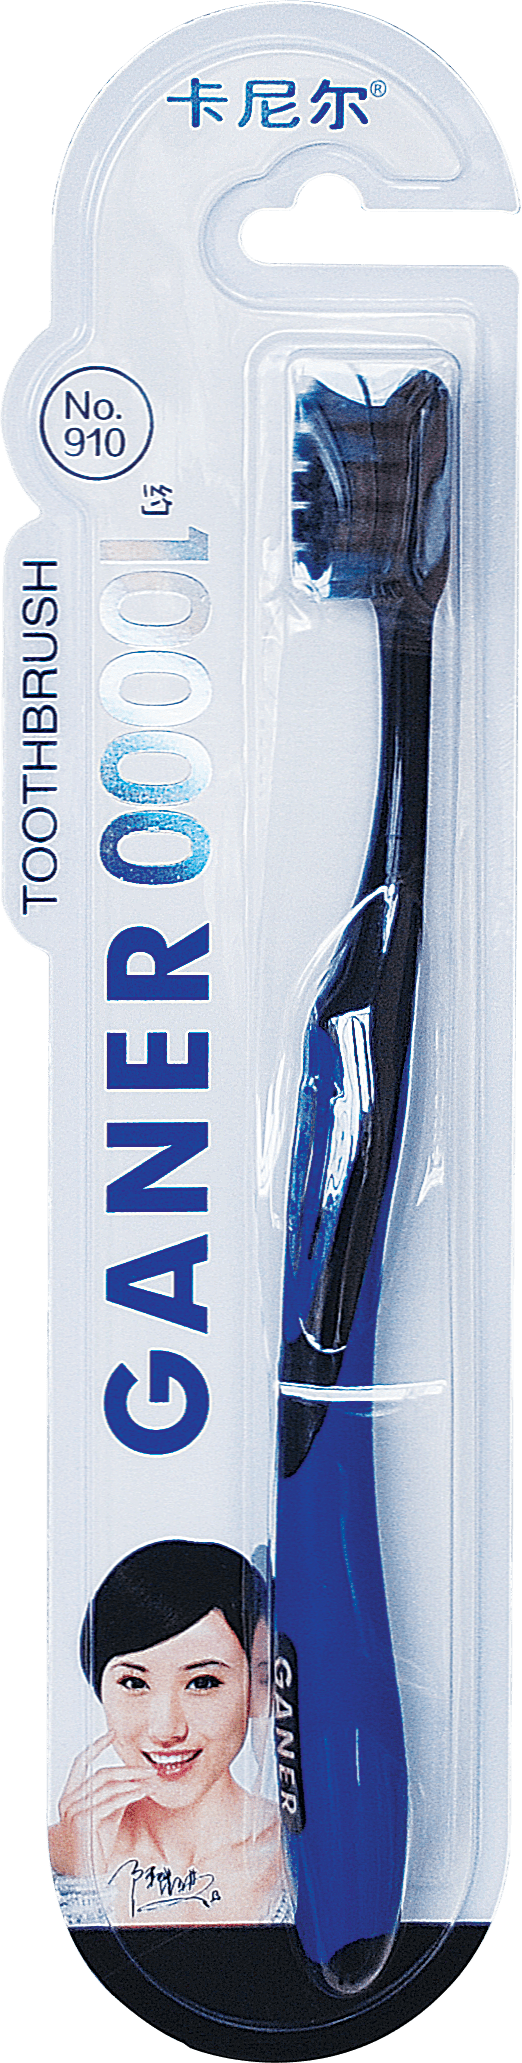 Щетка зубная GANER 10000 щетинок (910), 1 шт